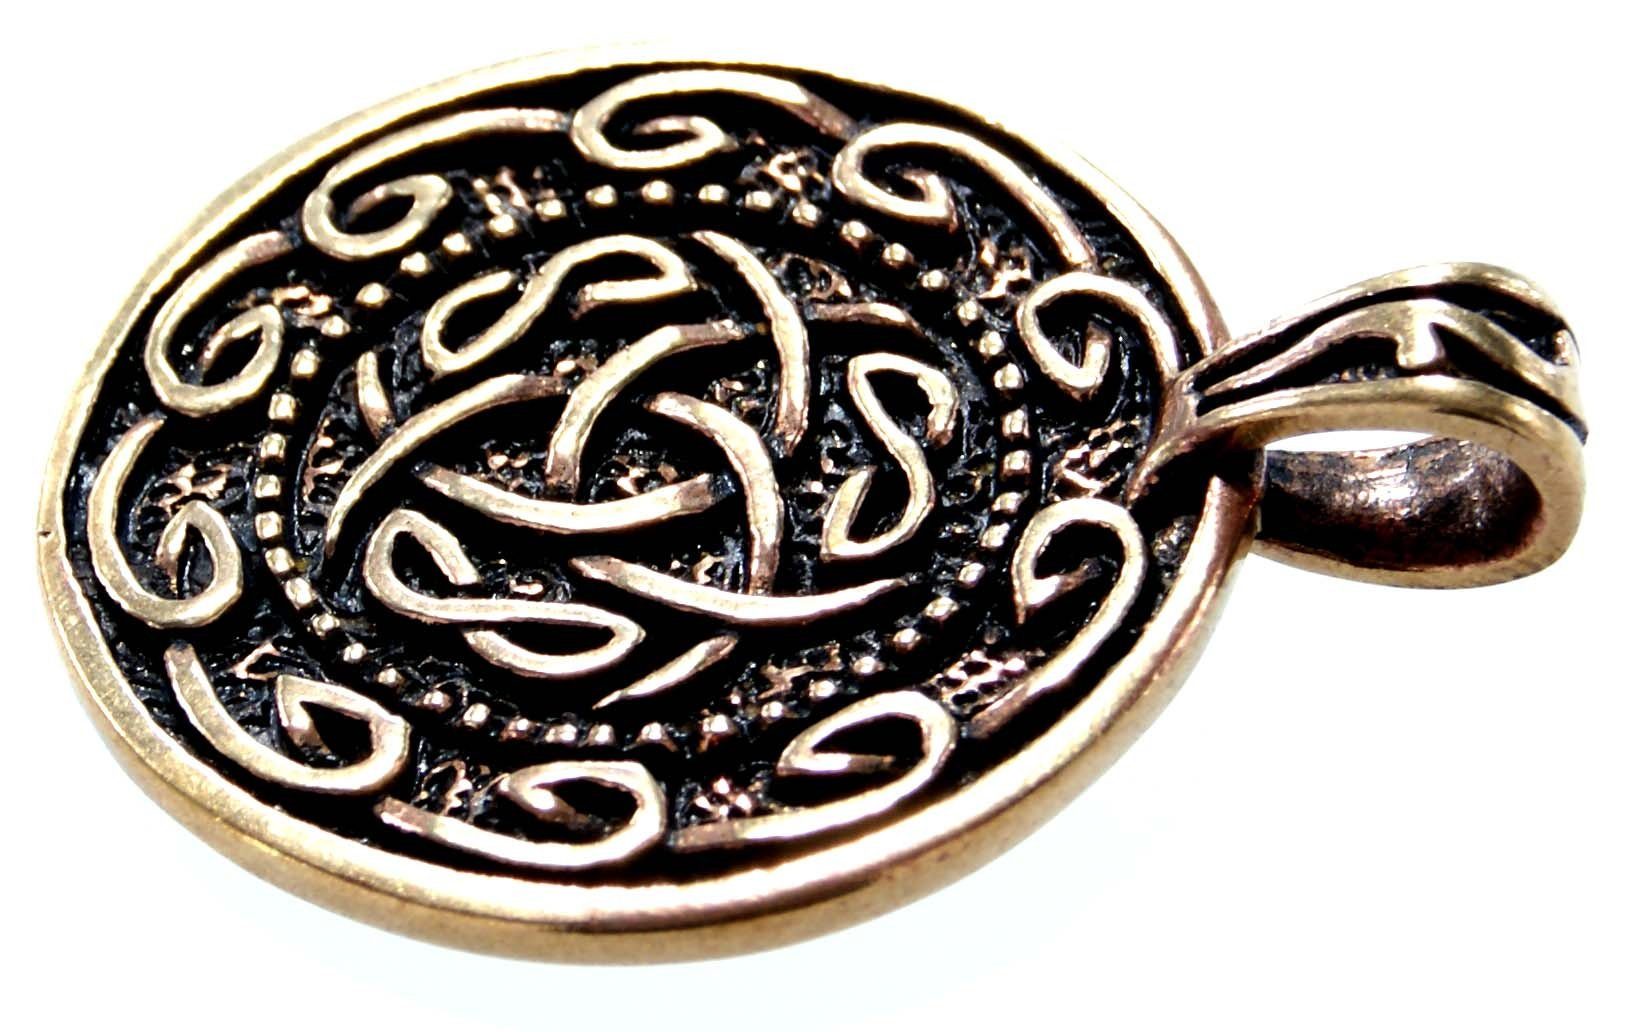 Keltenknoten Anhänger keltischer Knoten Kelten Kiss Kette Amulett Kettenanhänger Bronze Leather of